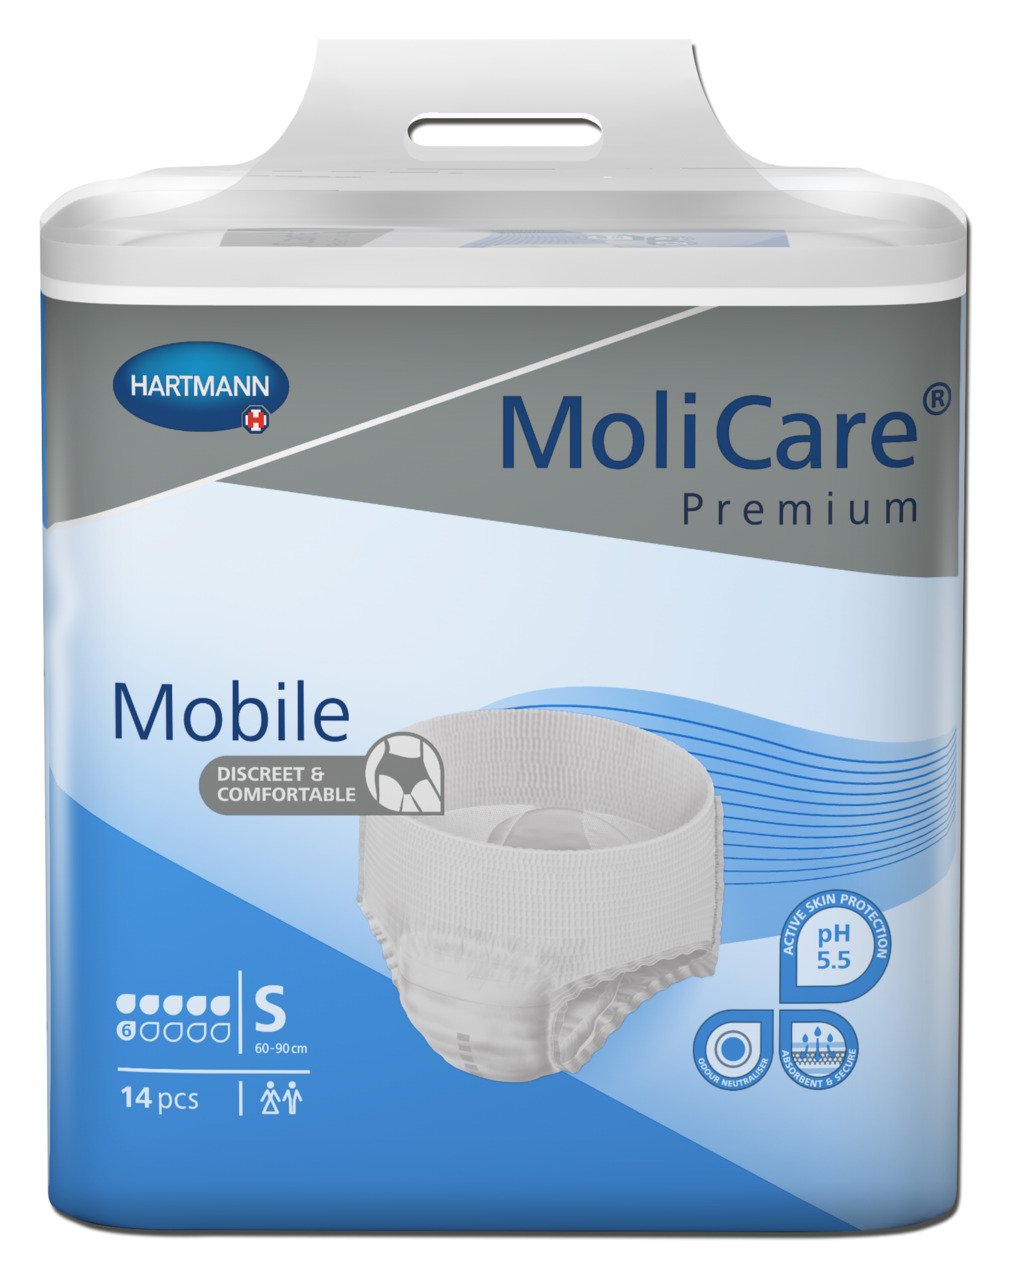 MoliCare Premium Mobile Small 6 drops 56